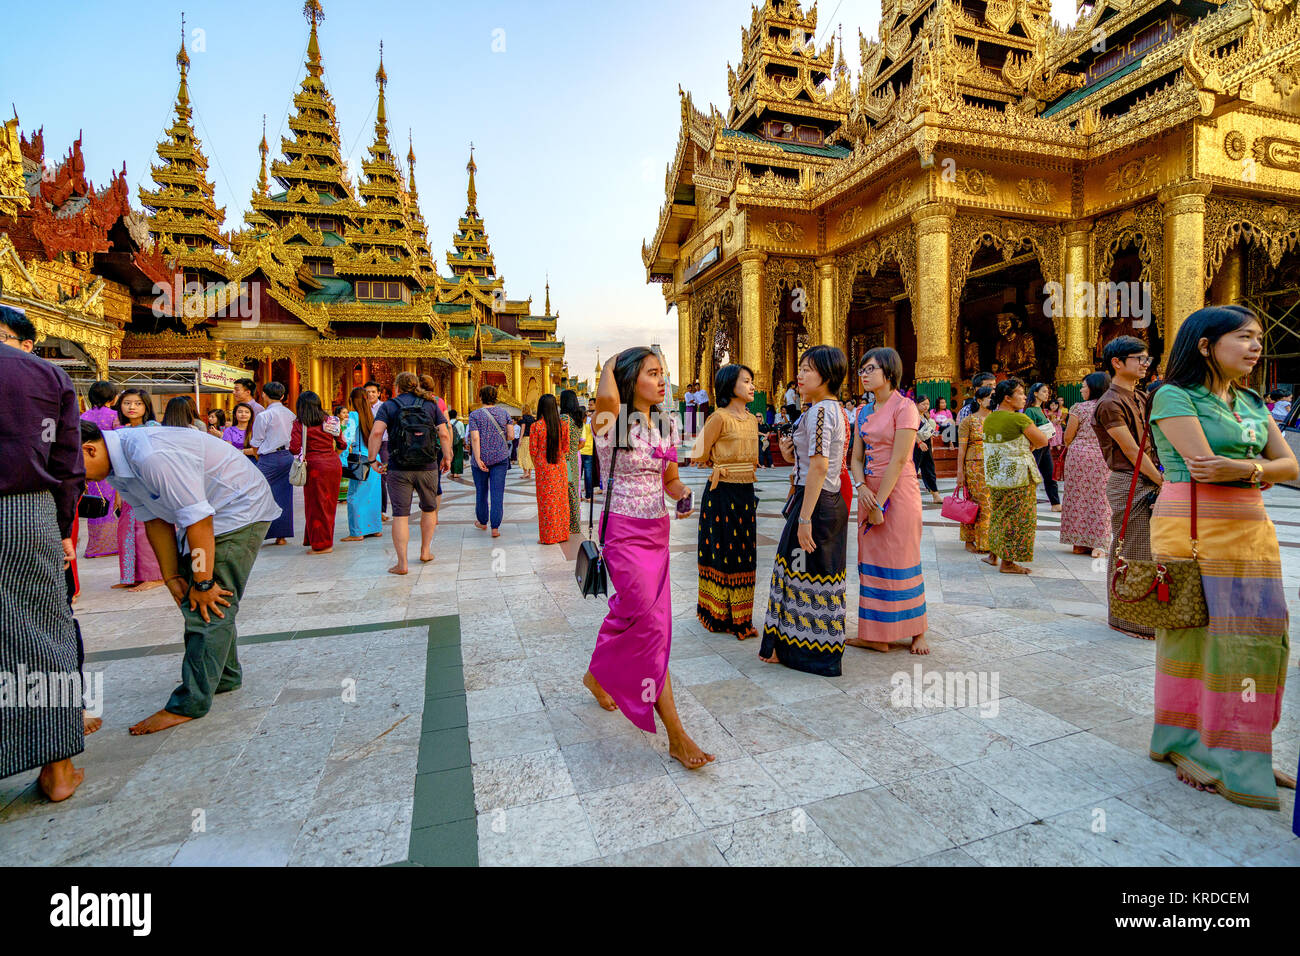 Image libre de droit stock de haute qualité de Paya Shwedagon pagoda Myanmer célèbre lieu sacré et un site d'attraction touristique.Yangon, Myanmar Banque D'Images